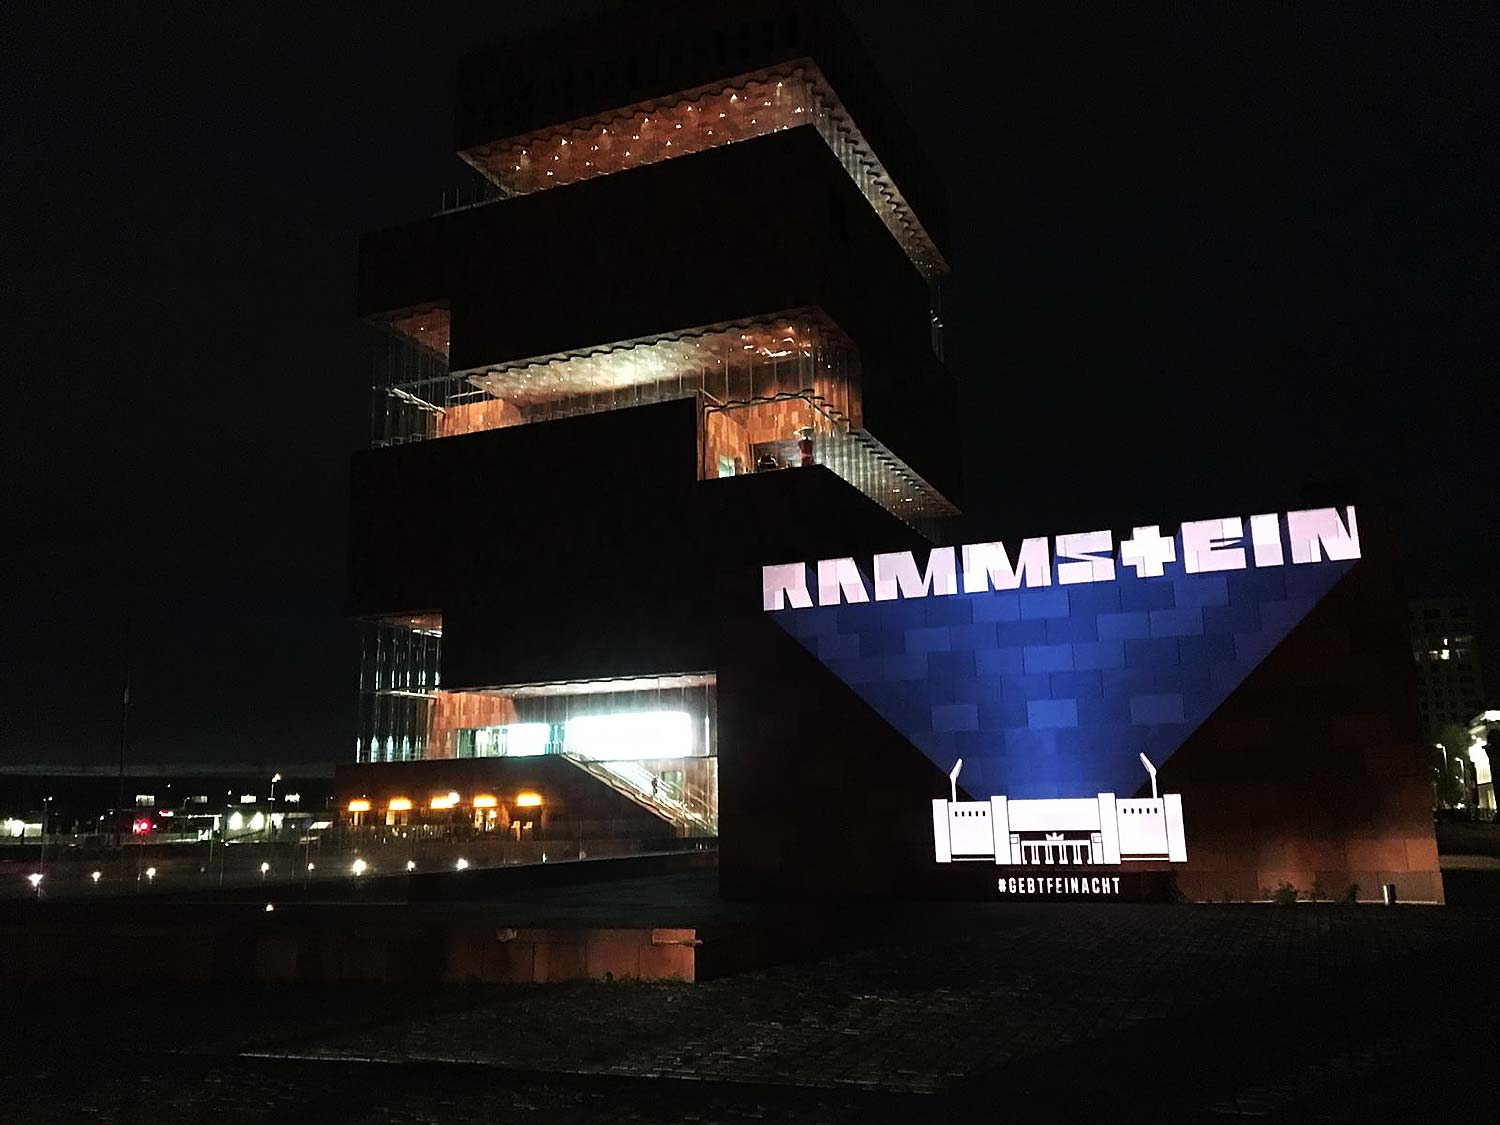 Rammstein. Stadion Tour 2019. 14